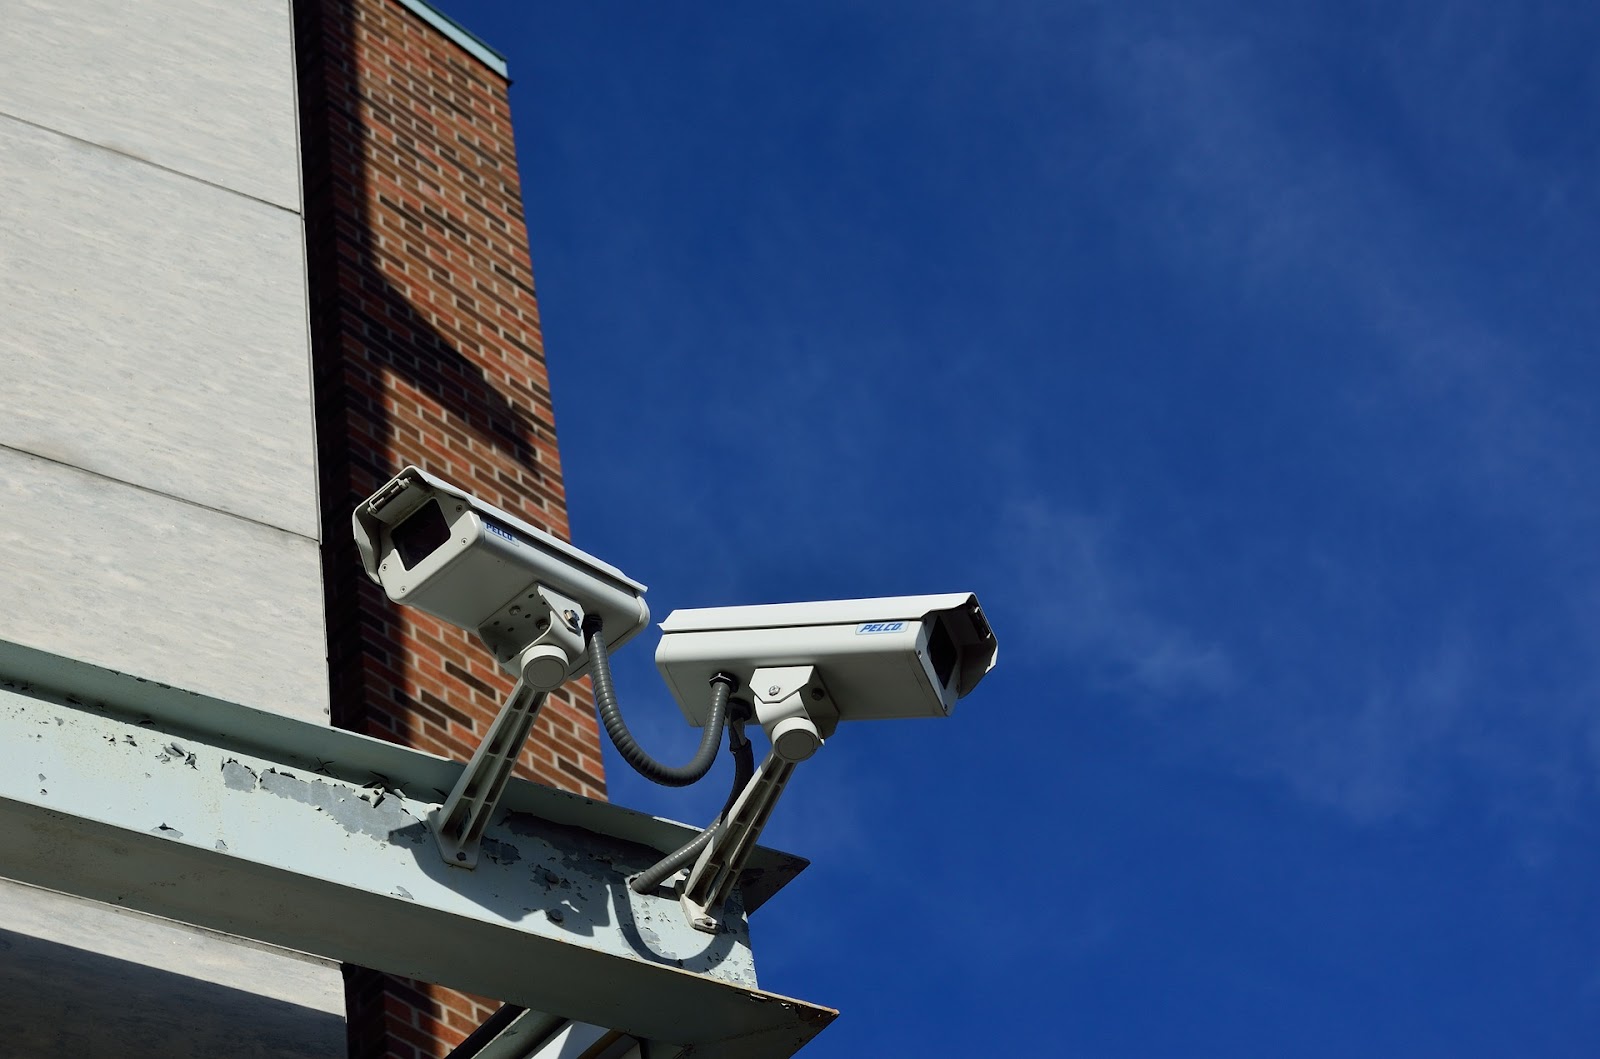 Smart CCTV monitoring adalah salah satu sistem keamanan rumah yang canggih